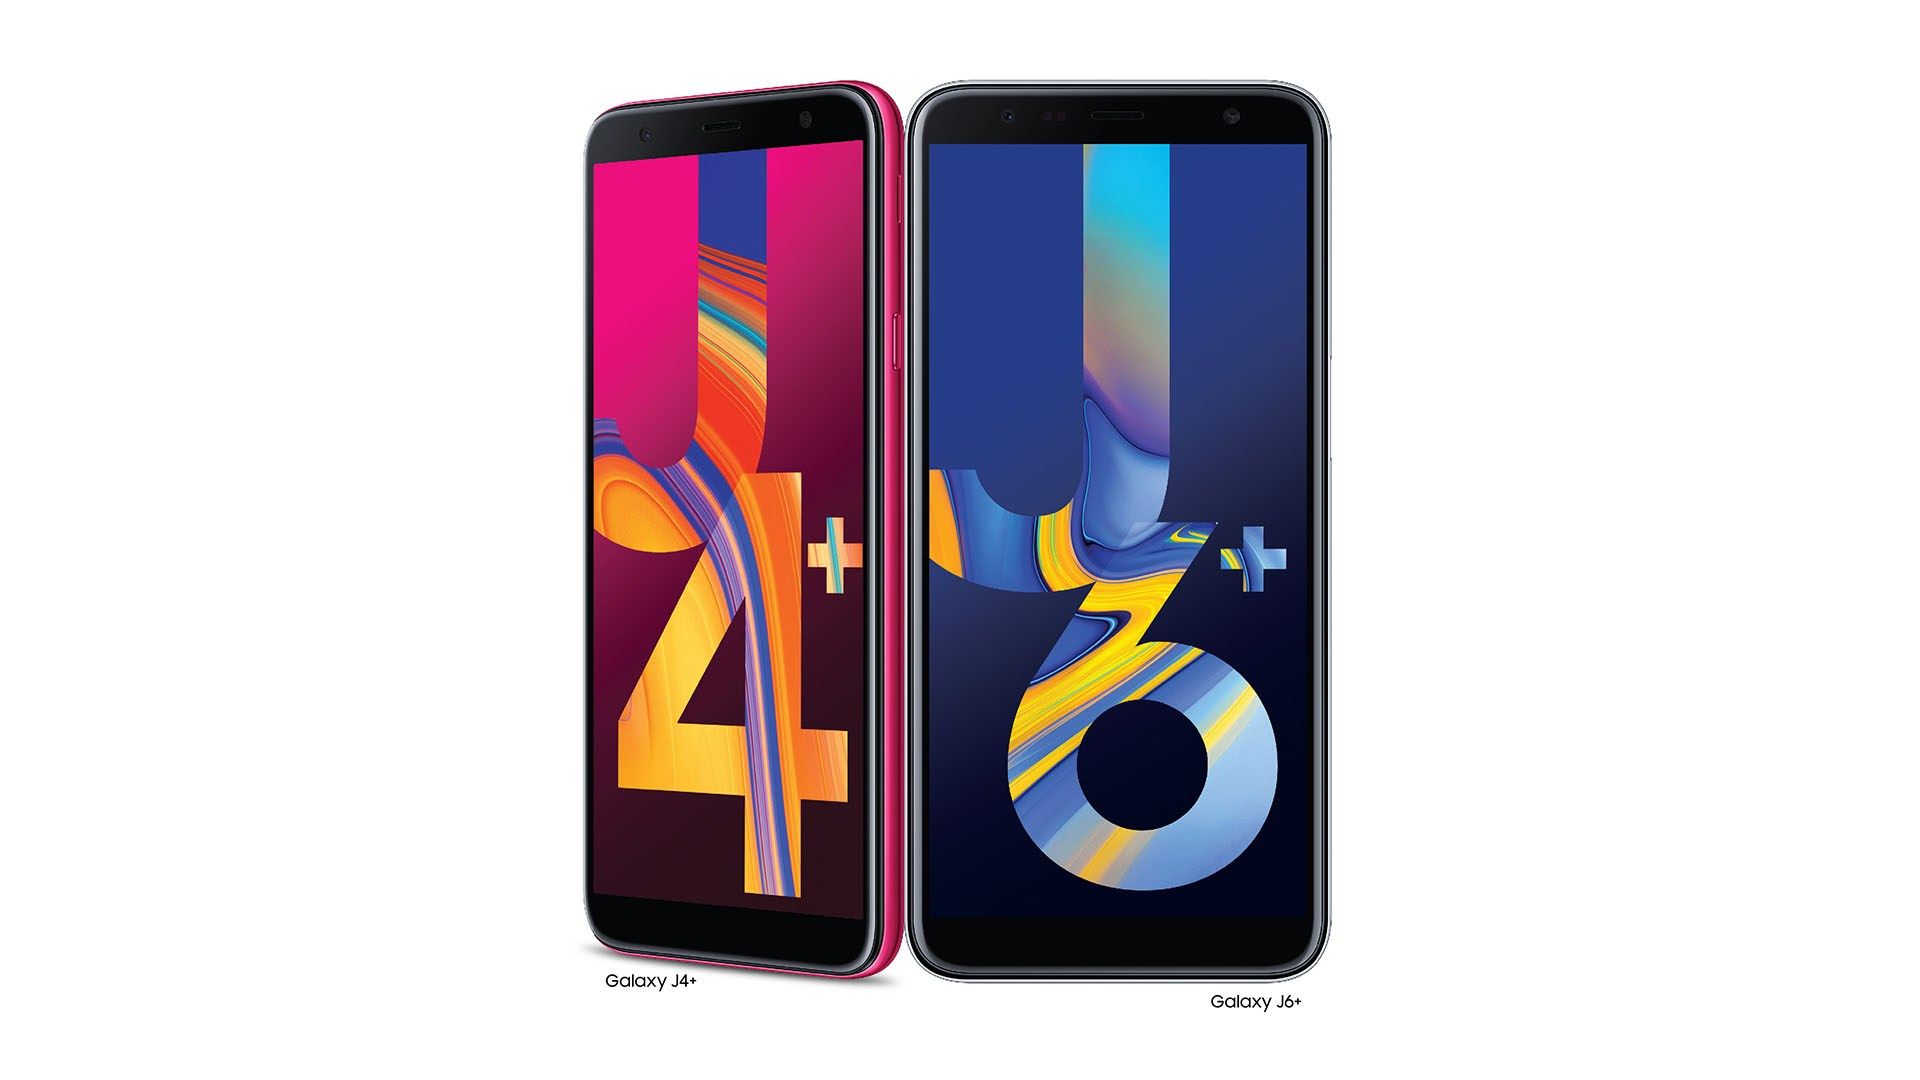 Samsung Galaxy J6+ and Samsung Galaxy J4+